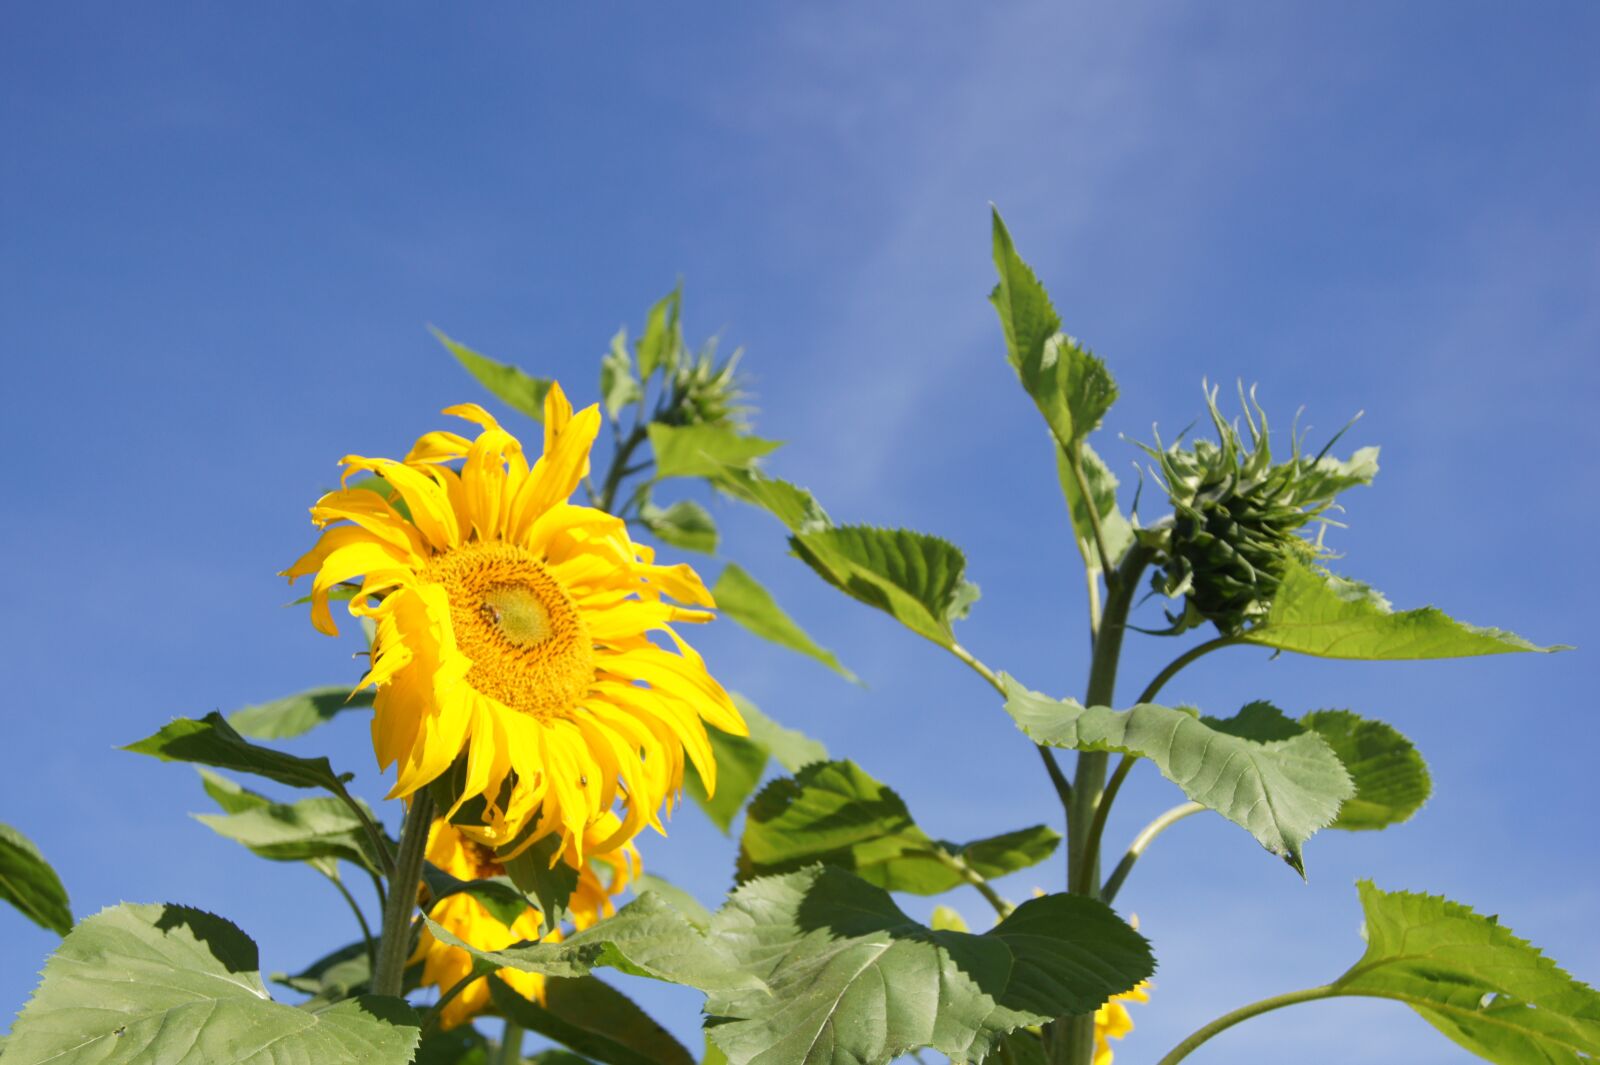 Sony Alpha DSLR-A550 sample photo. Sunflower, farm, plant photography